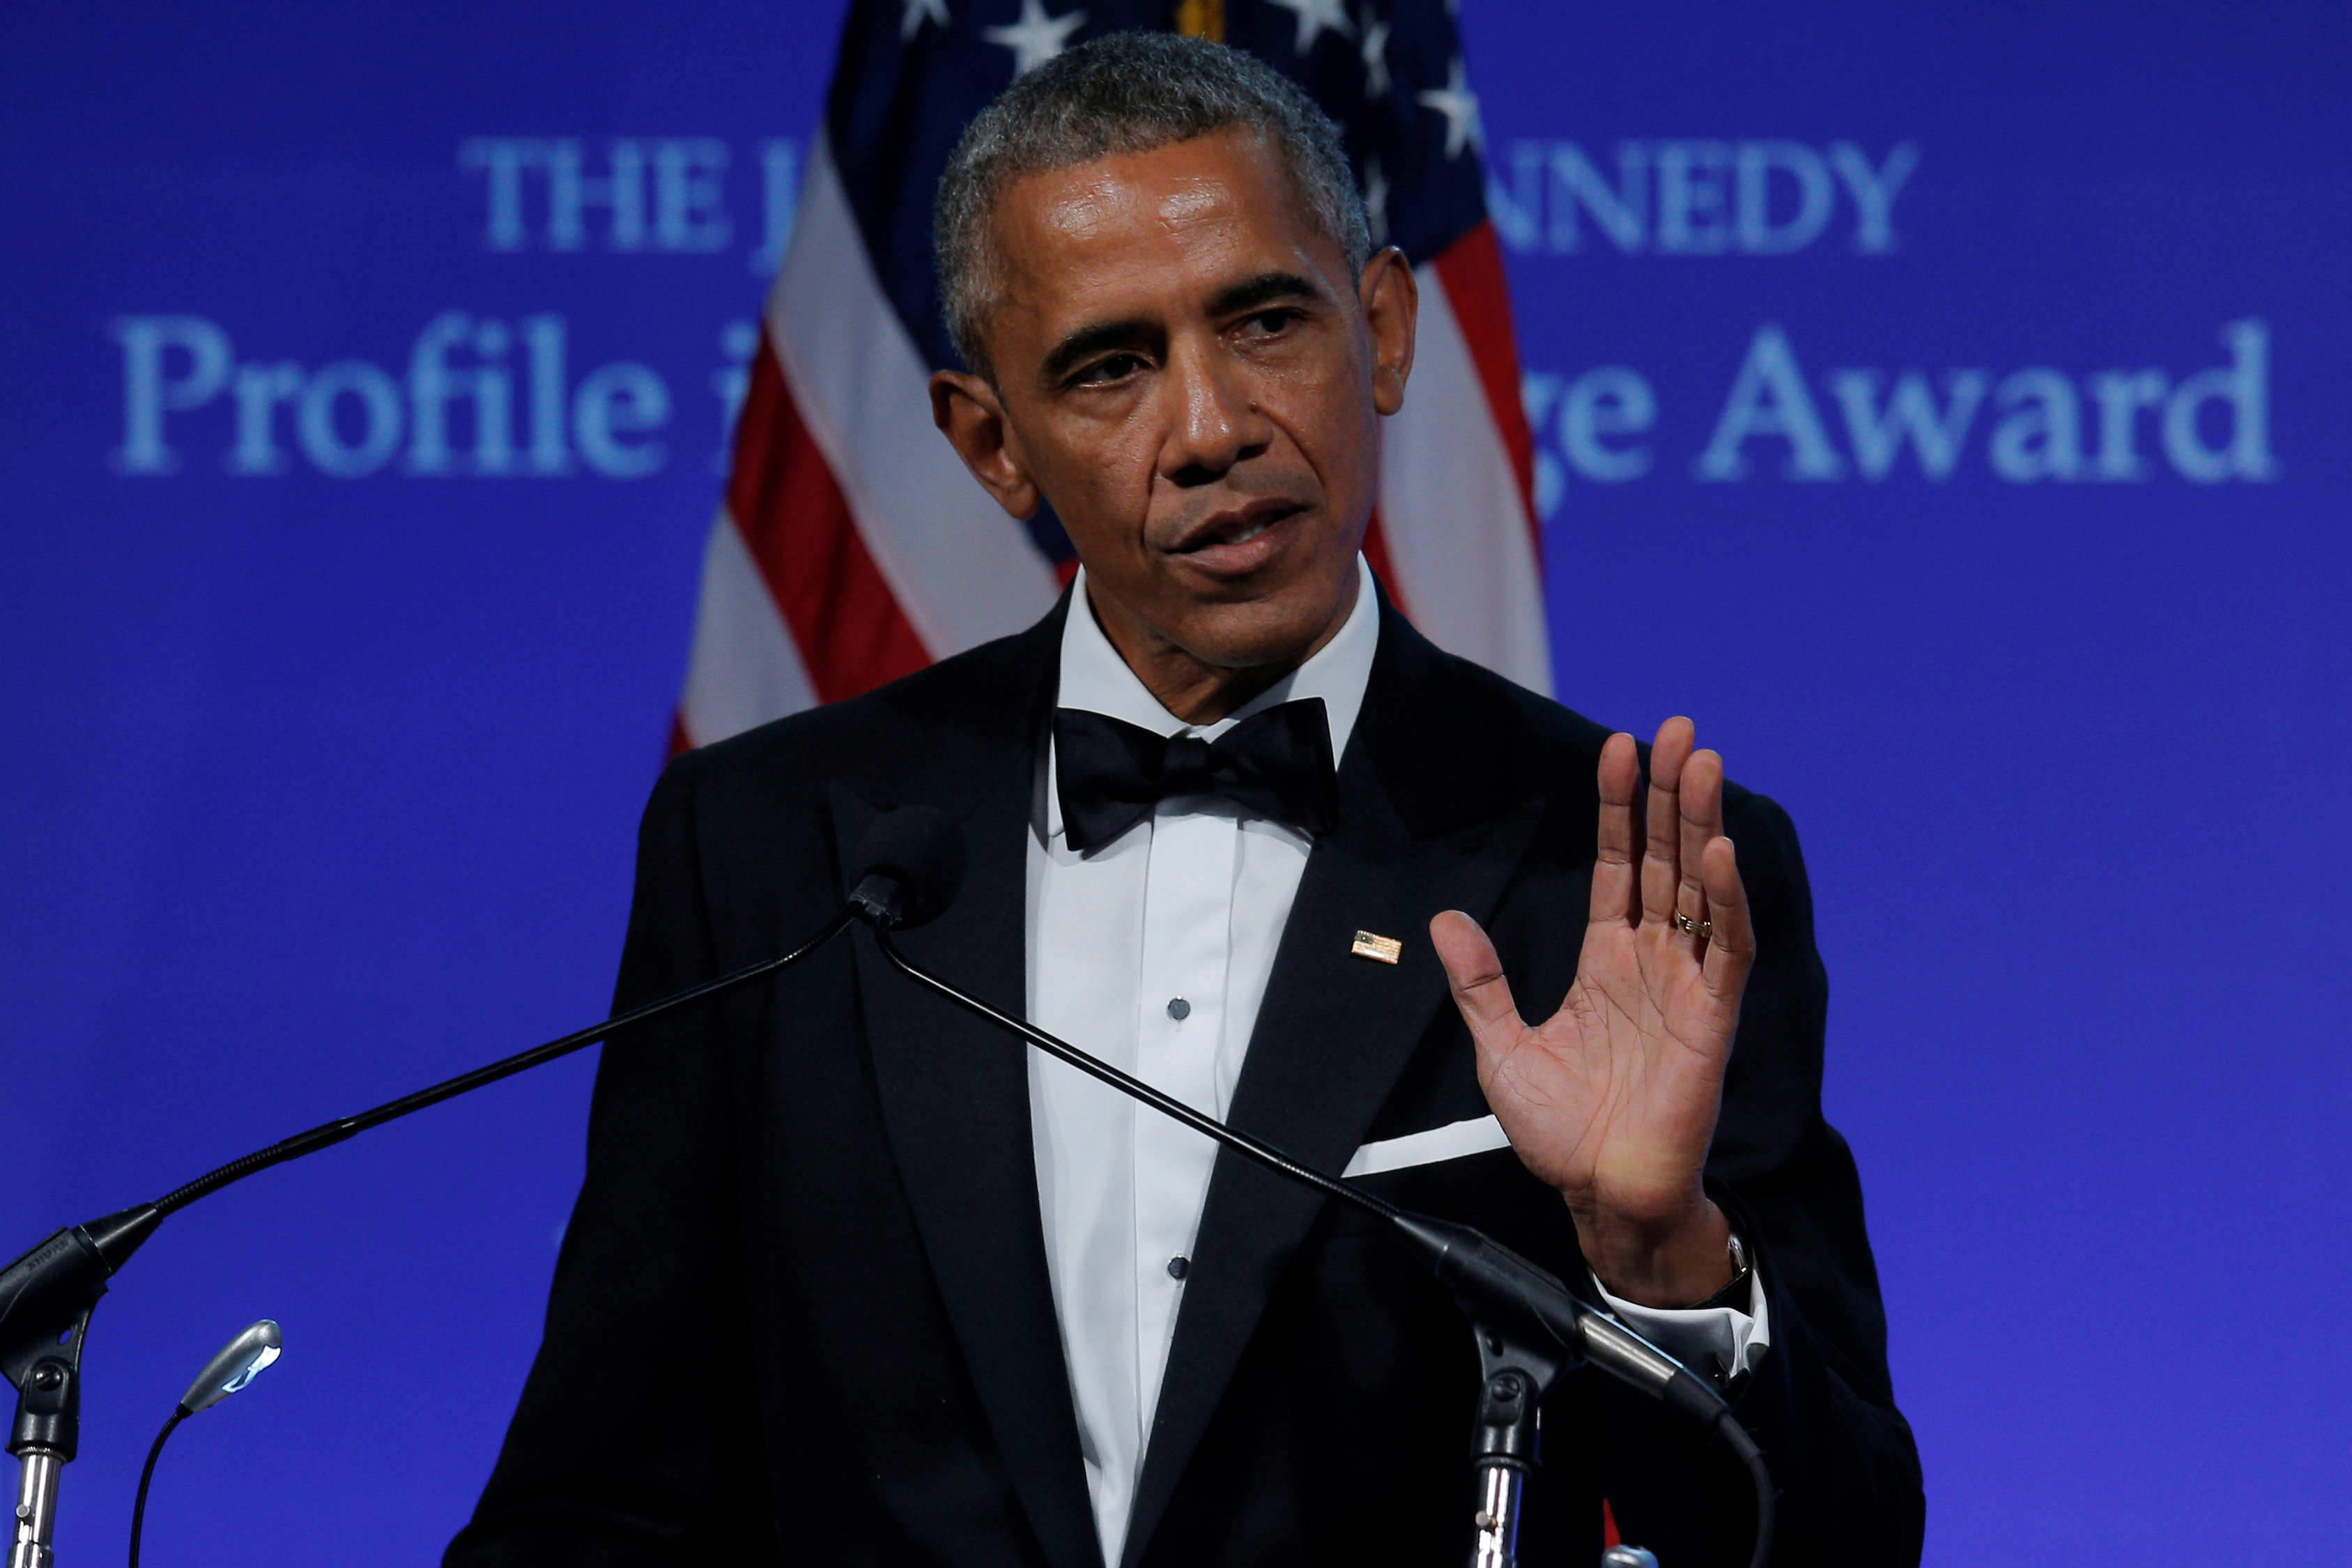 كلمة أوباما بمناسبة تسليمه جائزة كينيدي للشجاعة